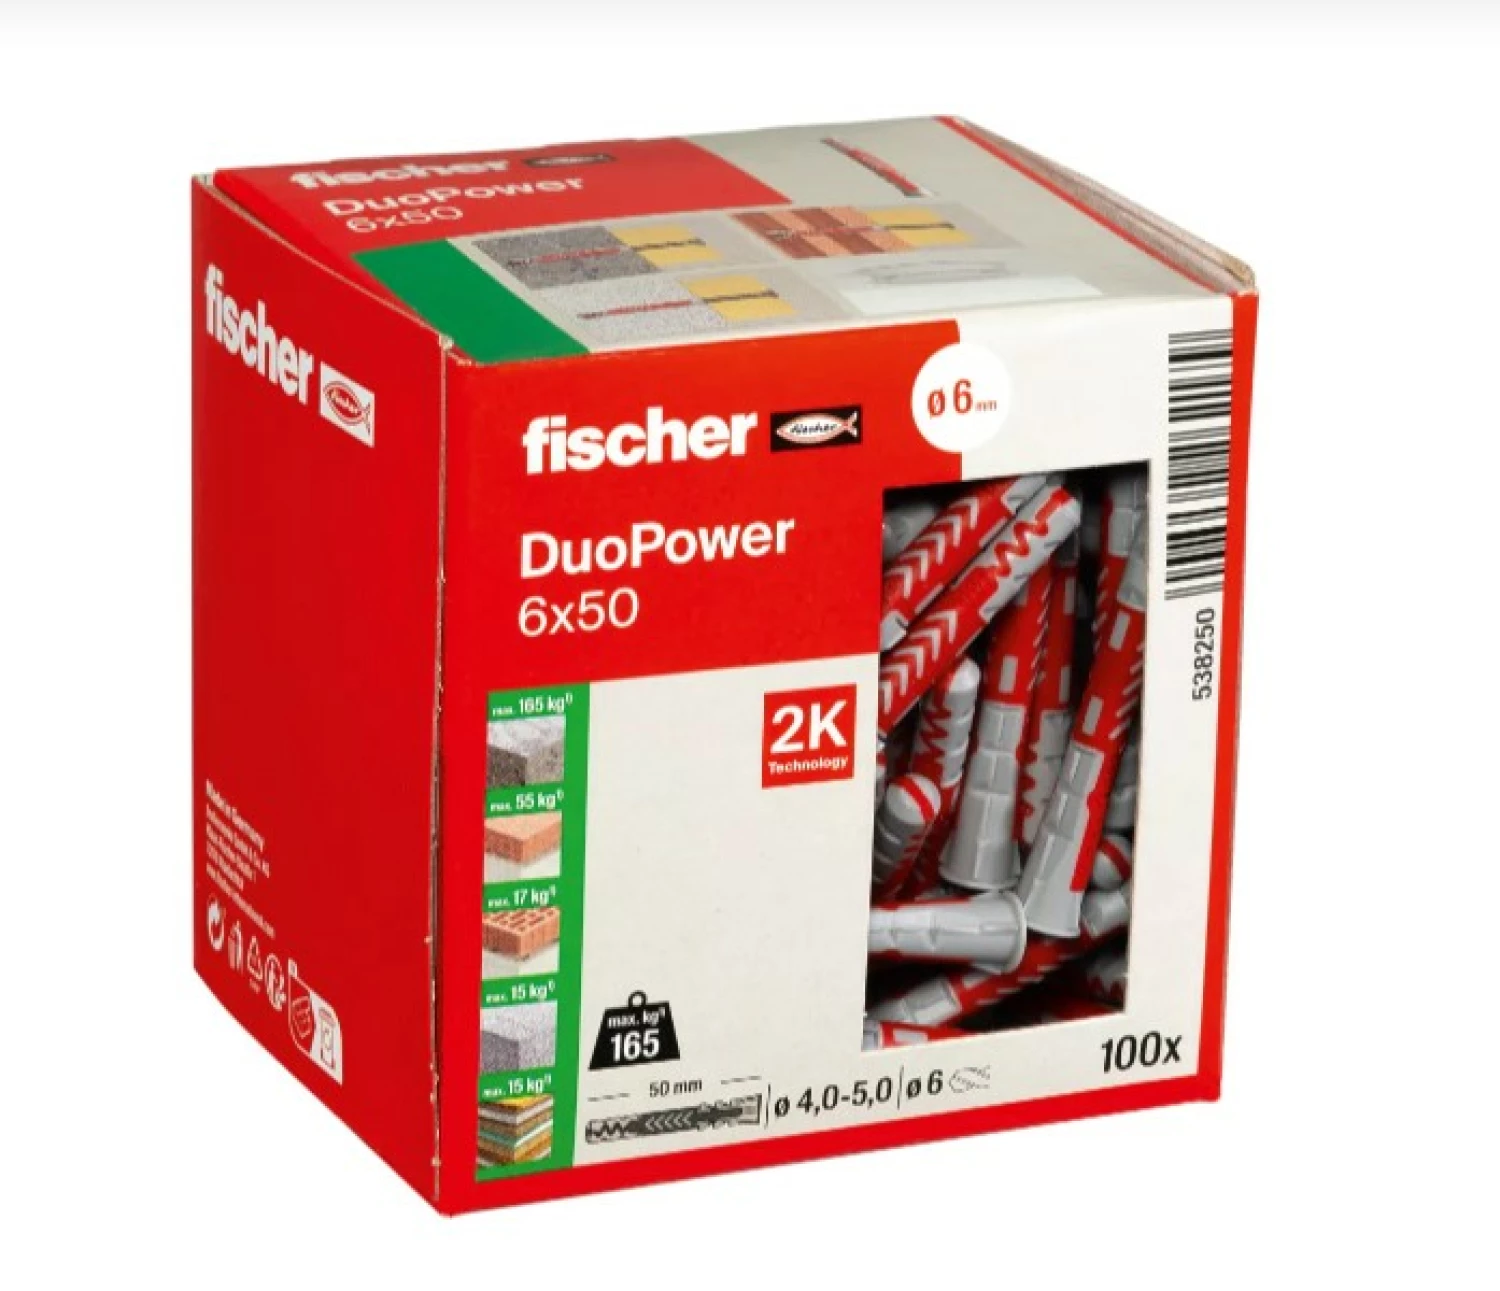 Fischer 538250 DuoPower Universele pluggen - 6 x 50mm (100st)